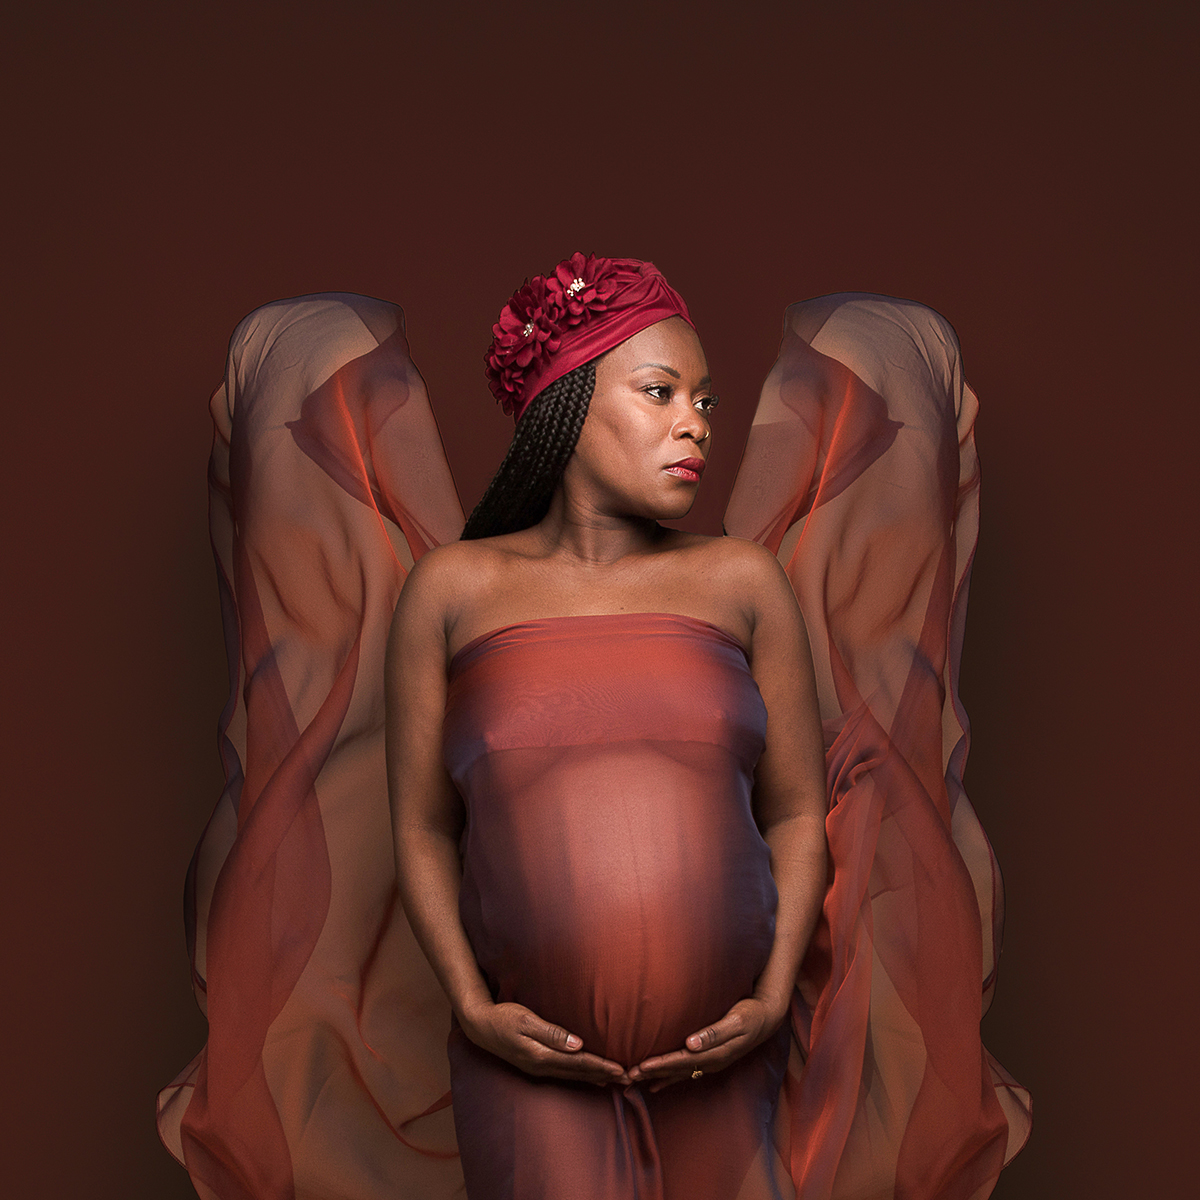 photo grossesse Annecy - Miser sur les accessoires pour photographier la femme enceinte, par Sandrine Prost, photographe d'art professionnelle